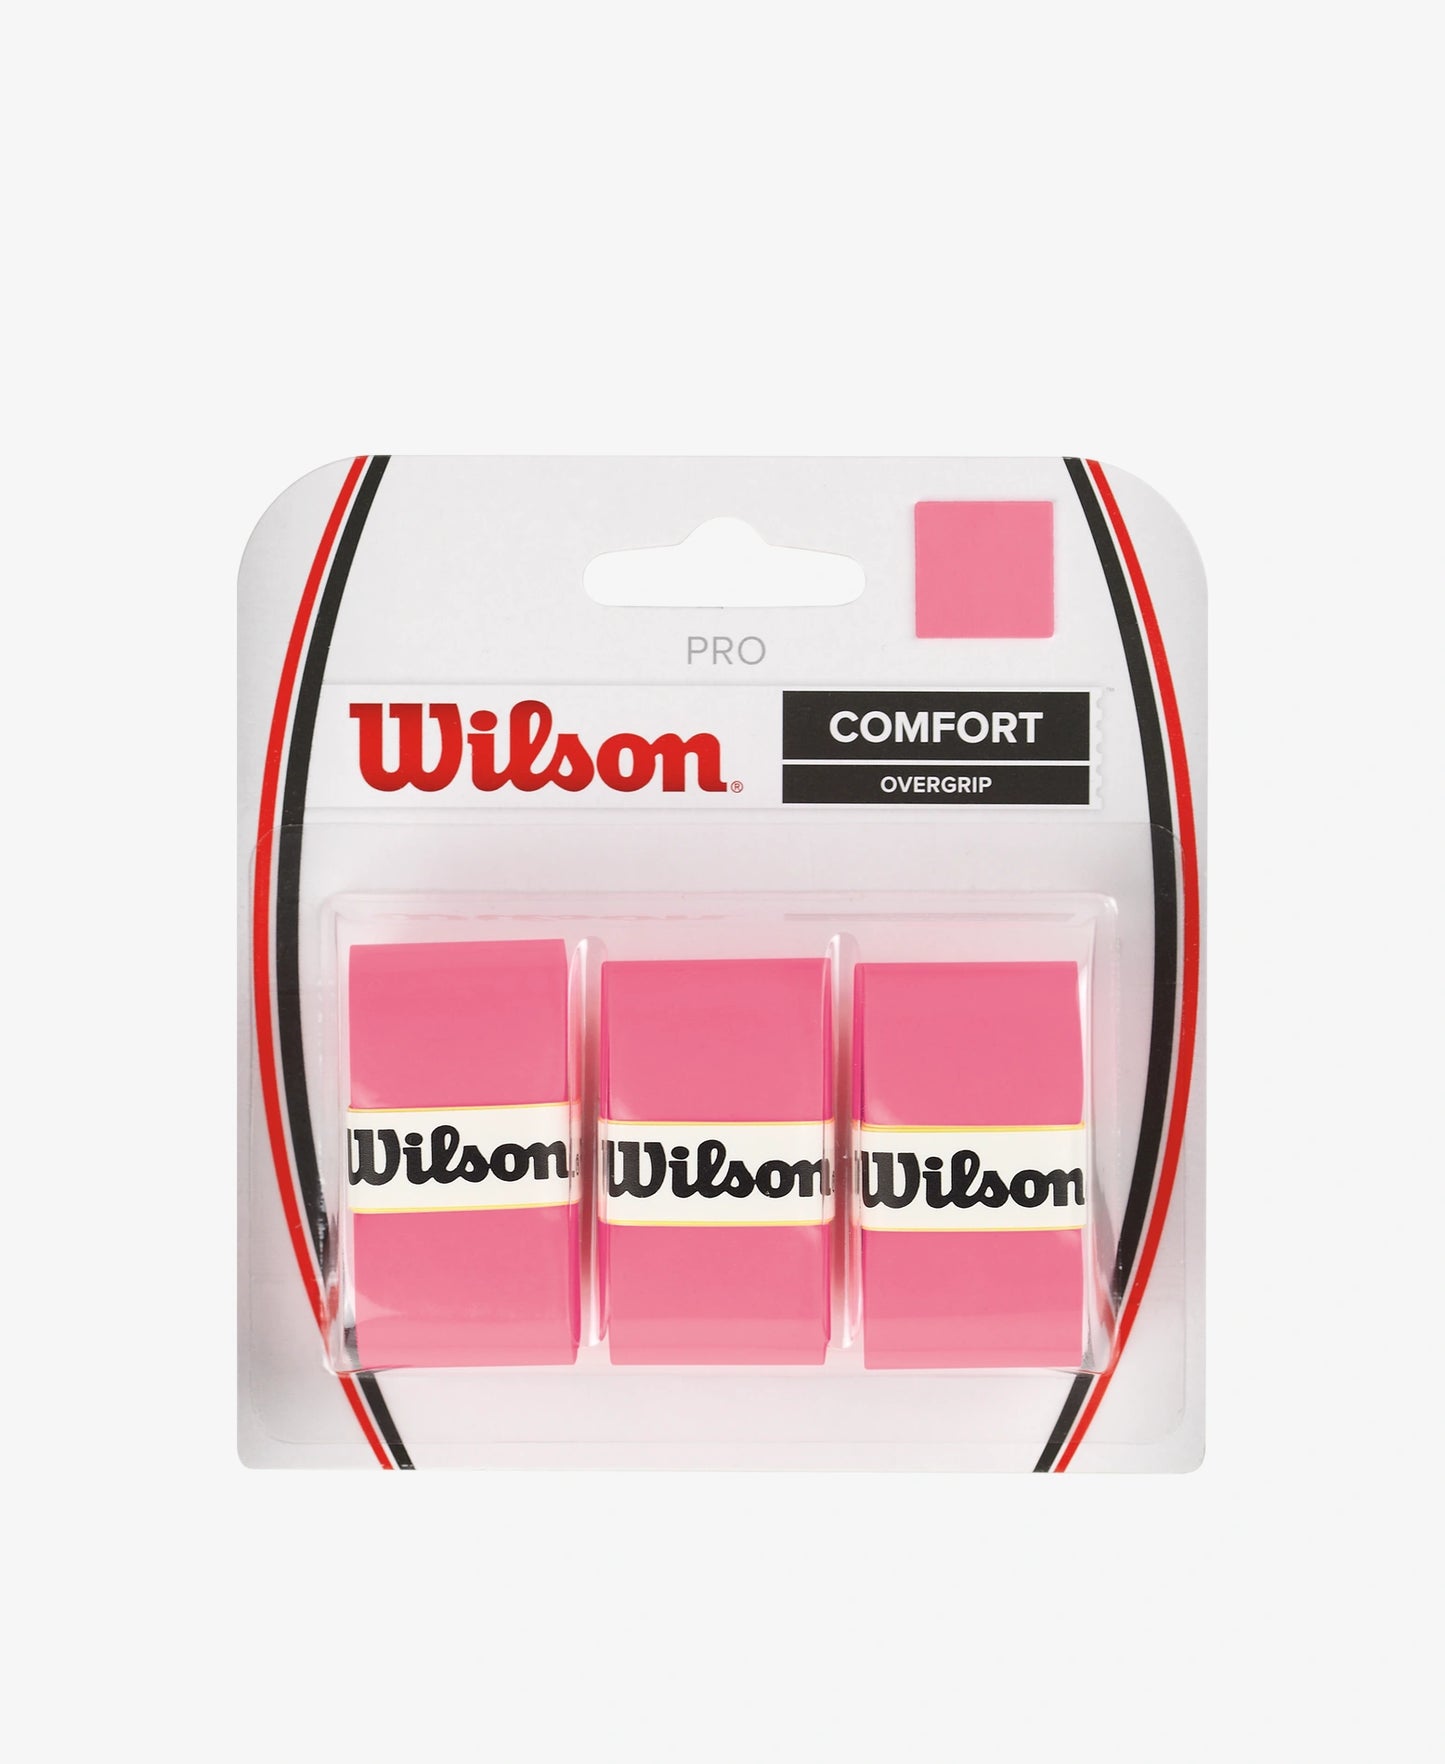 Wilson Comfort Overgrip (Tennis) - 3 Pack